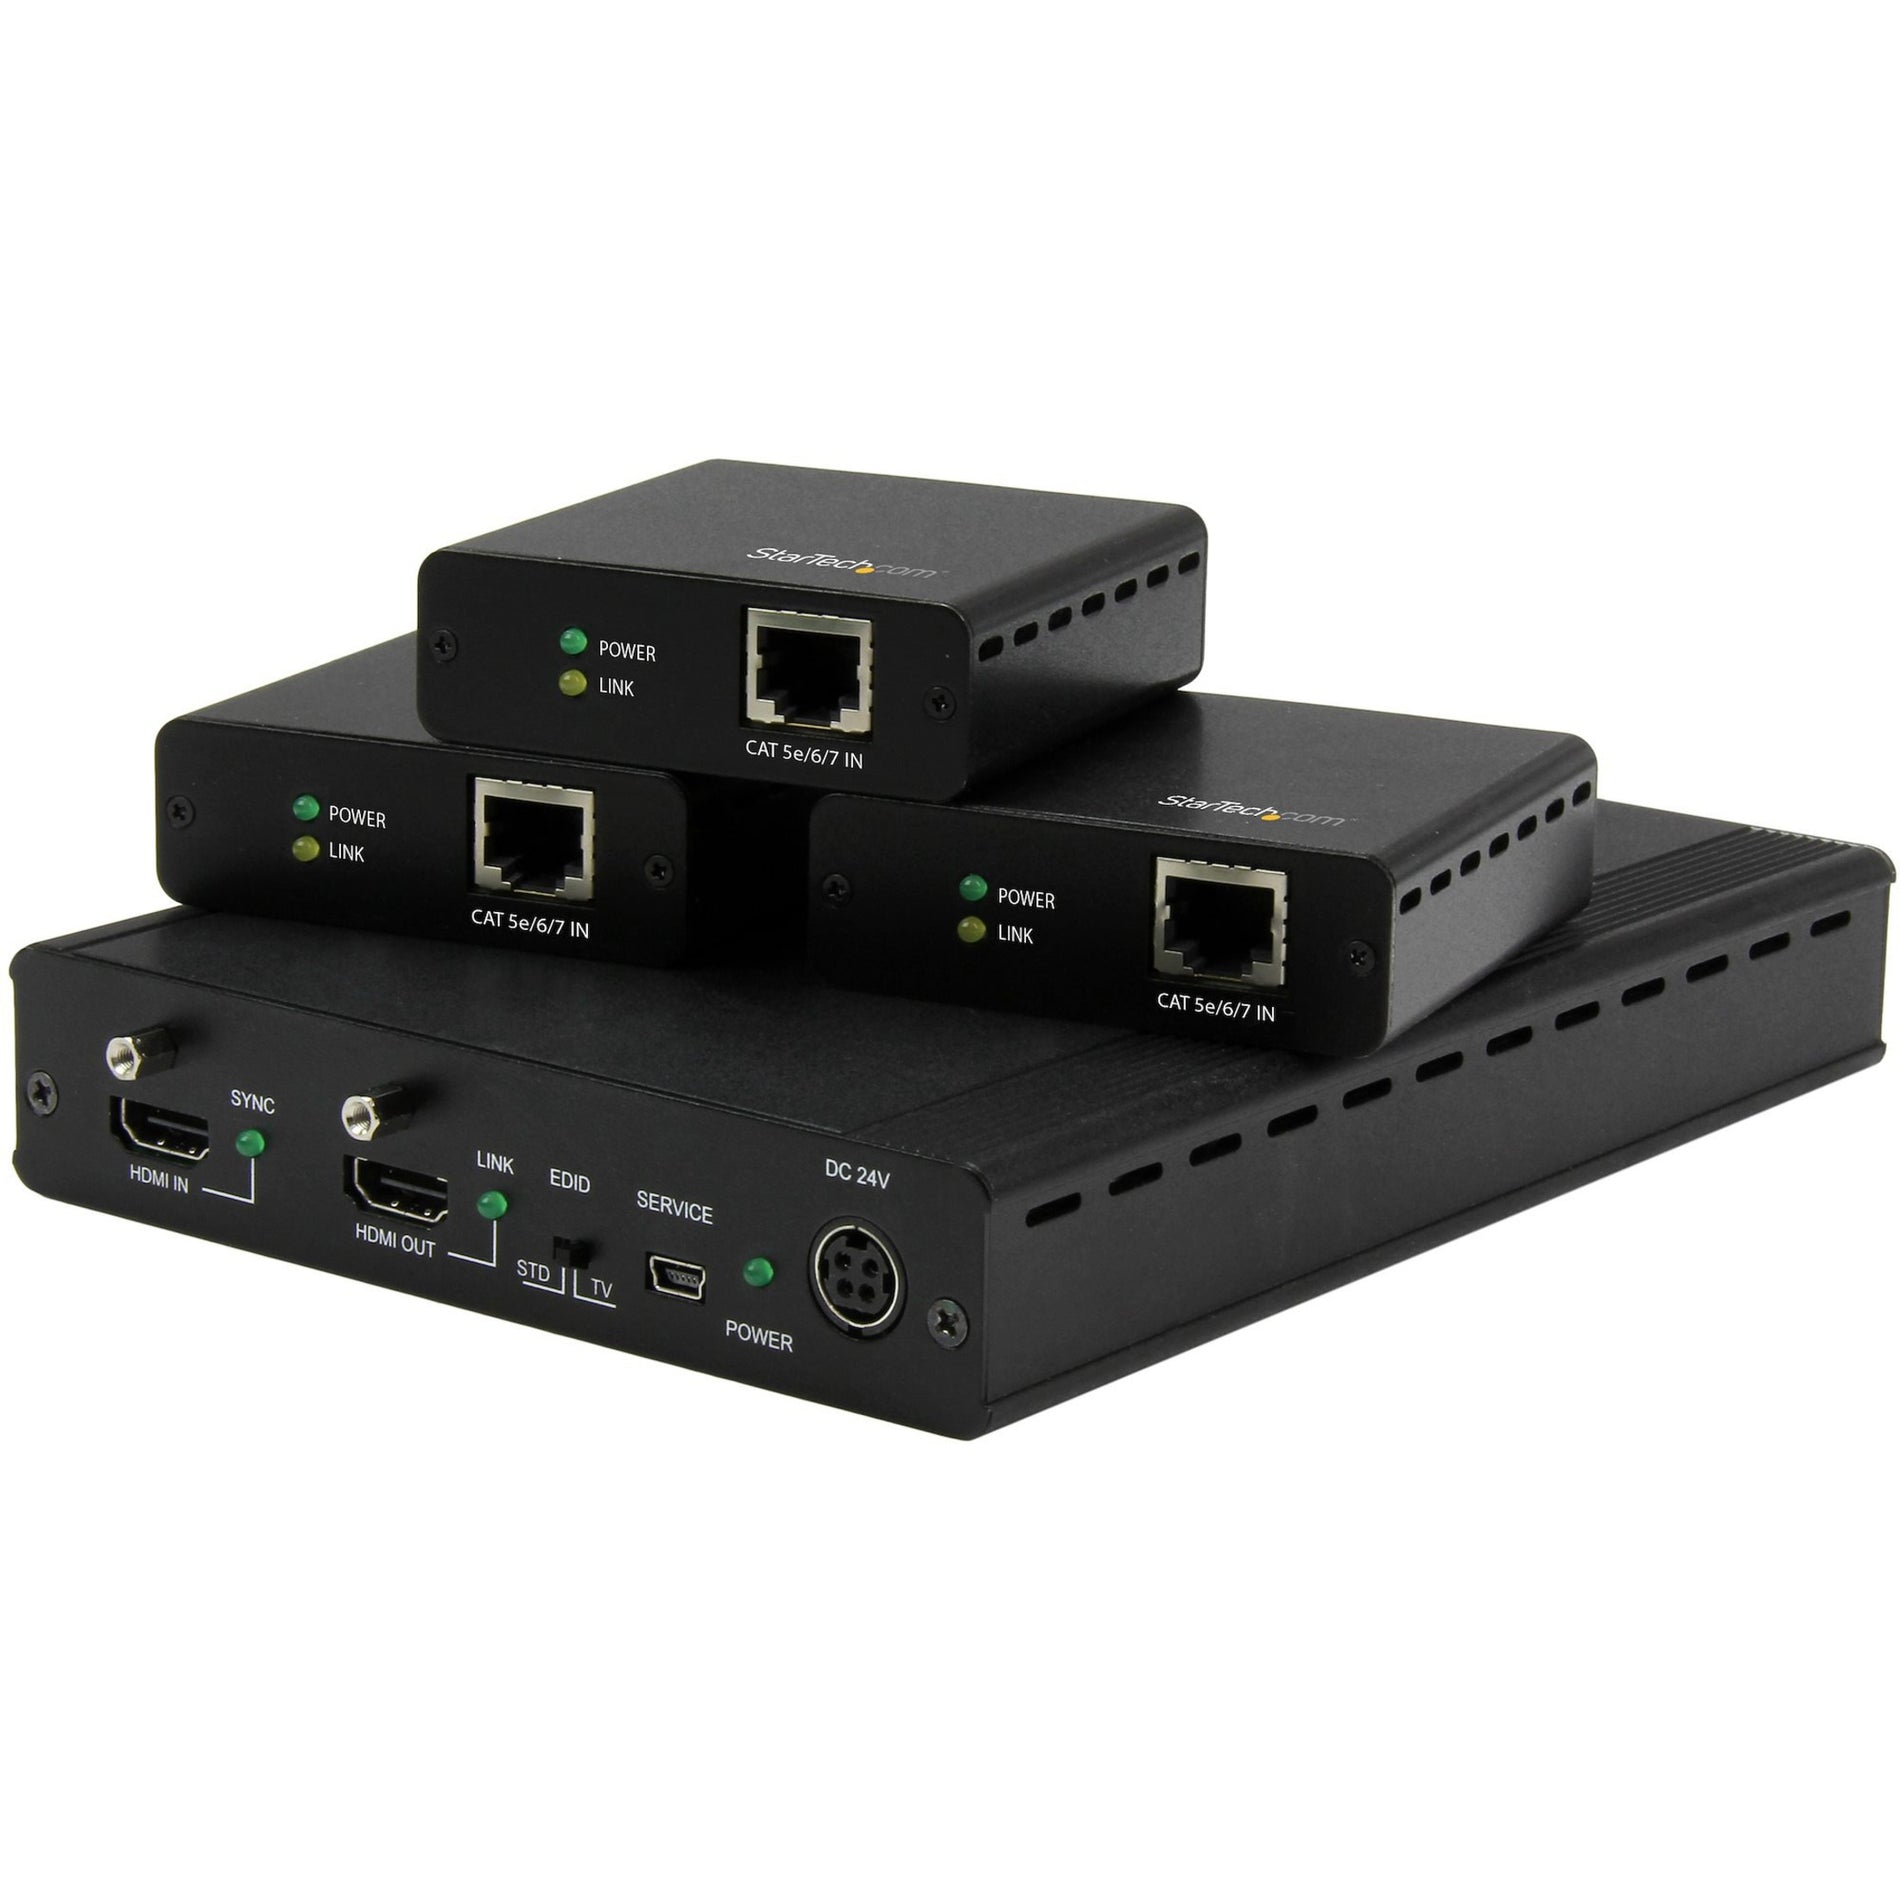 StarTech.com ST124HDBT Video Extender Transmitter/Receiver, 3 Port HDBaseT Extender Kit with 3 Receivers, Up to 4K